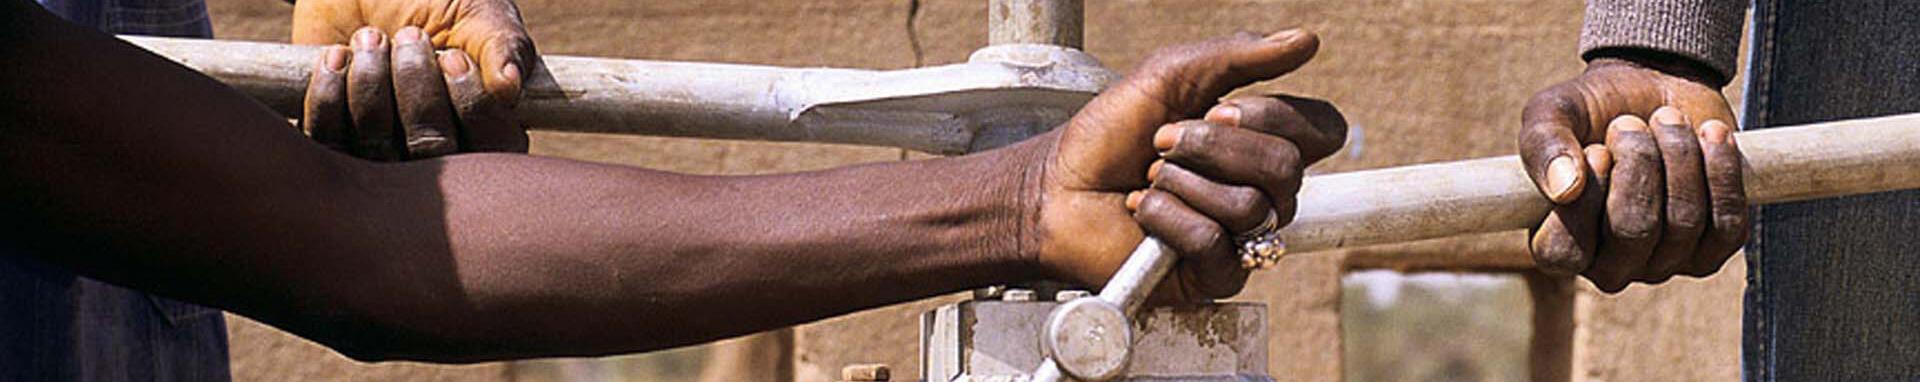 World Bank Photo CollectionF Water pump. Mali. Photo:Curt Carnemark / World Bank